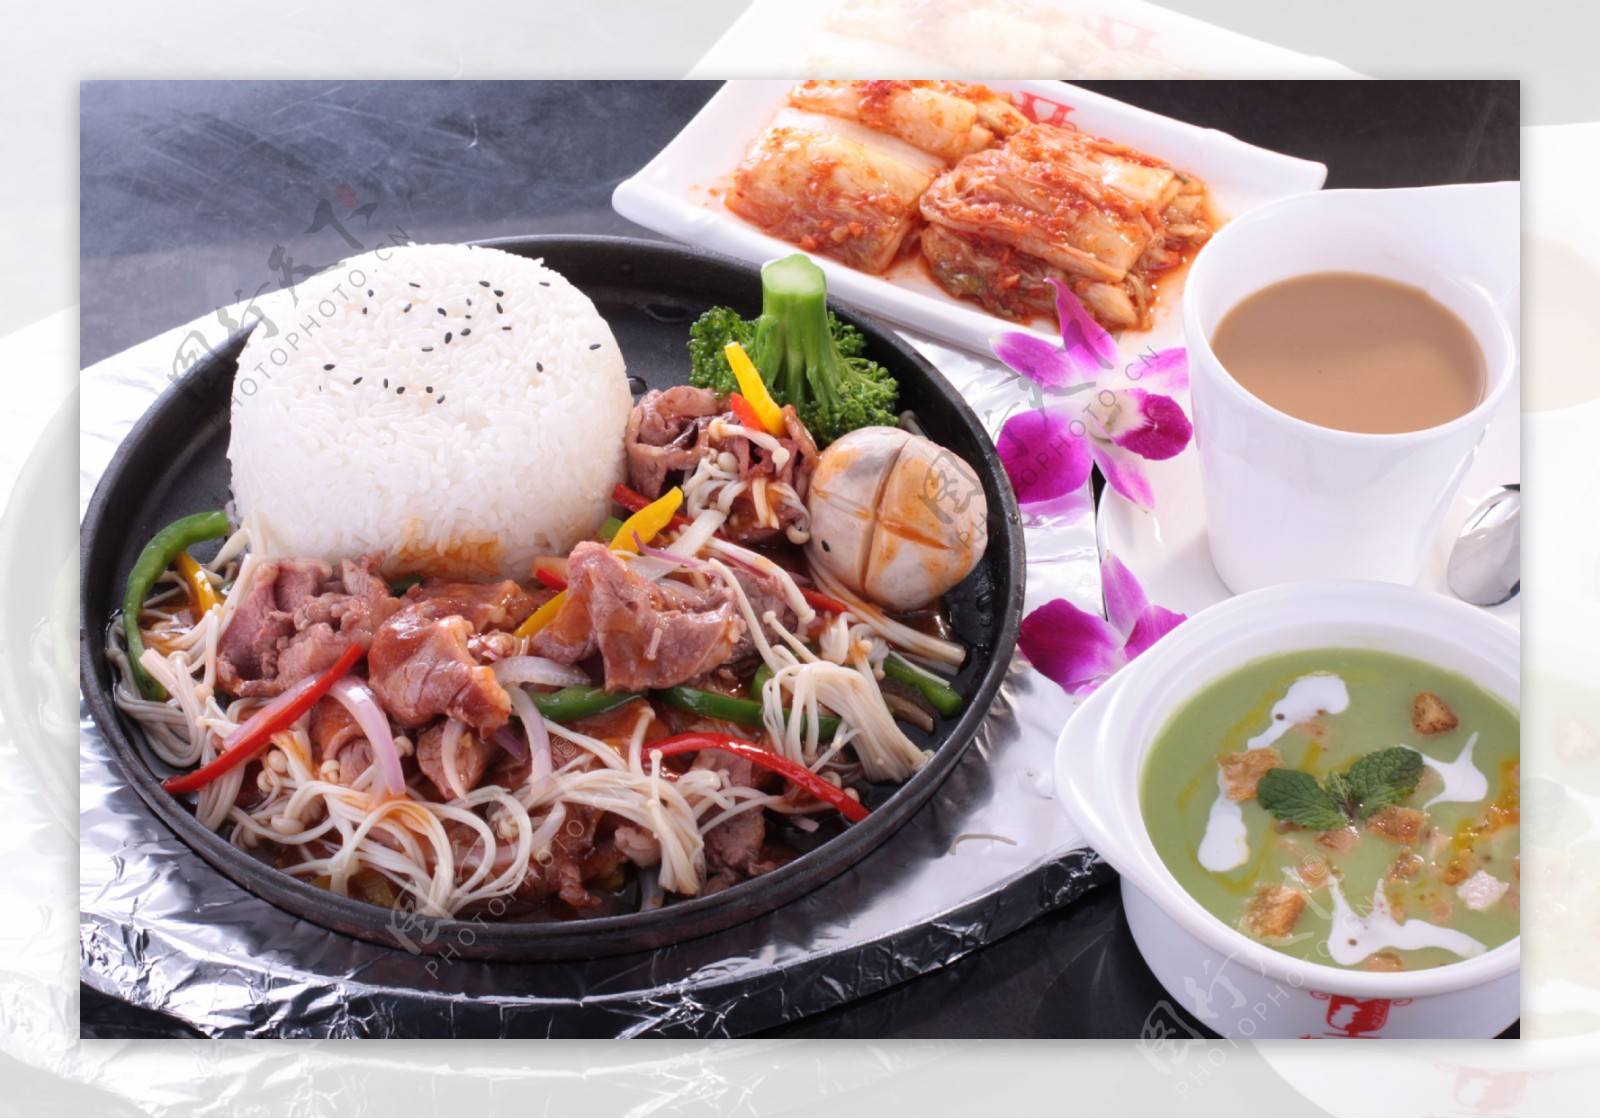 韩国铁板饭套餐图片